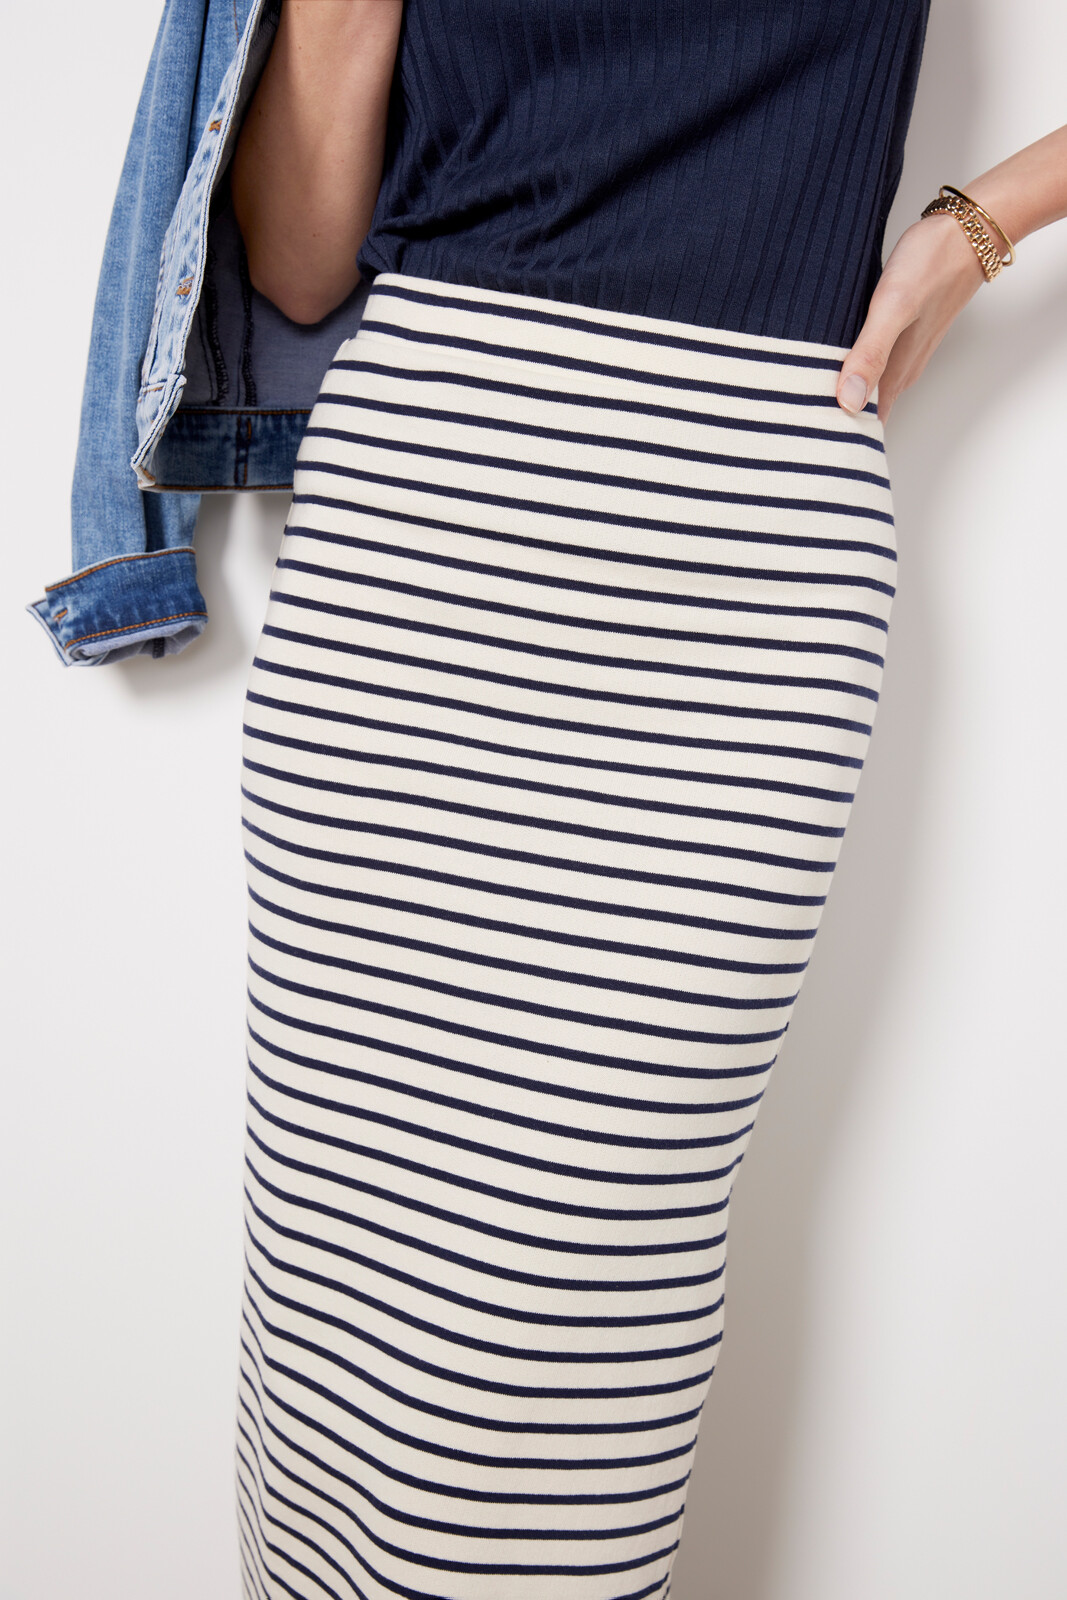 Whit Striped Maxi Skirt